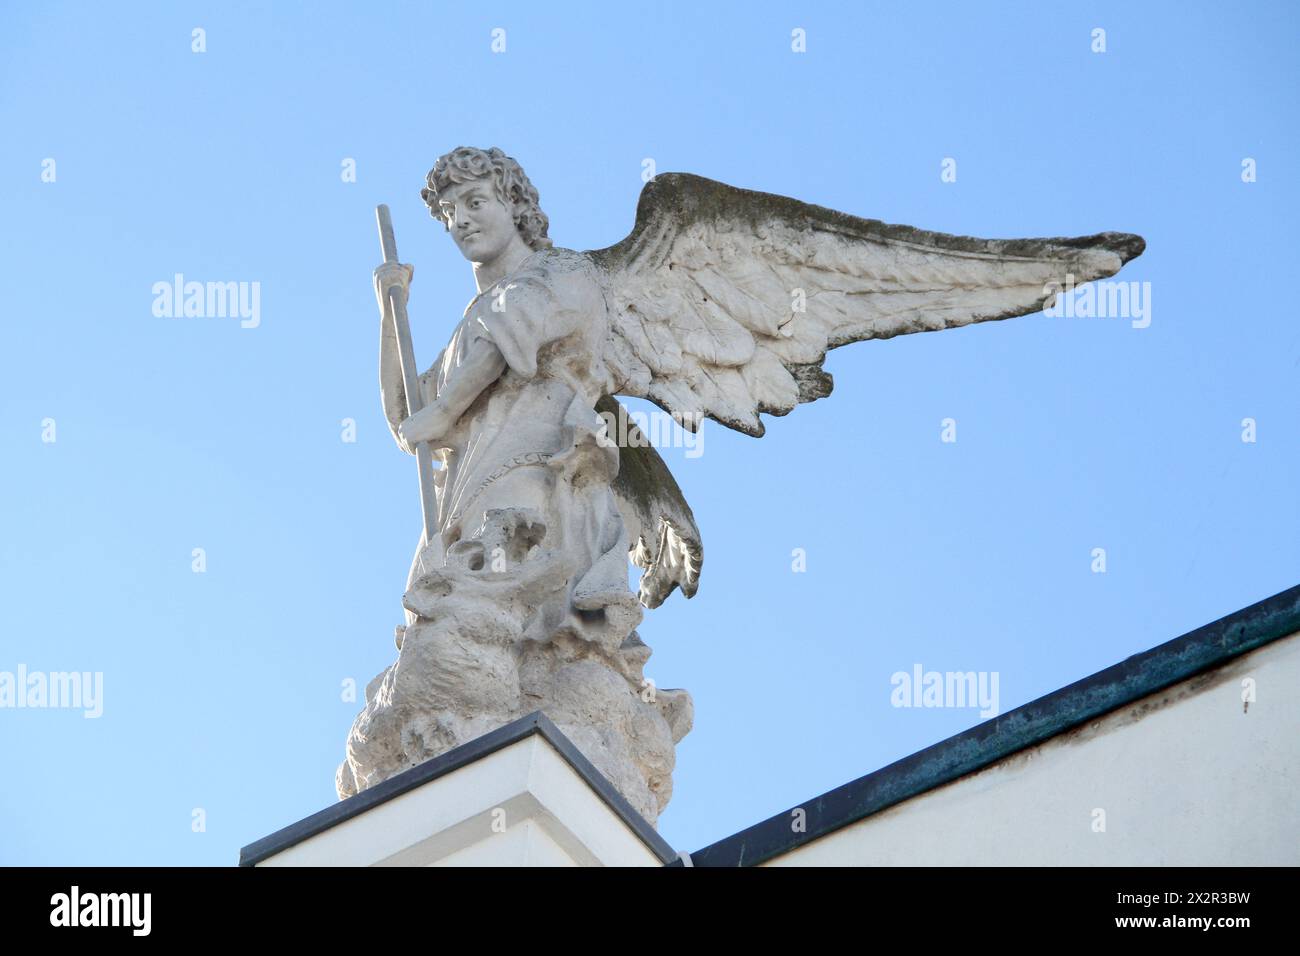 Mola di Bari, Italie. Statue de l'archange Saint Michel combattant la bête avec une lance. Banque D'Images